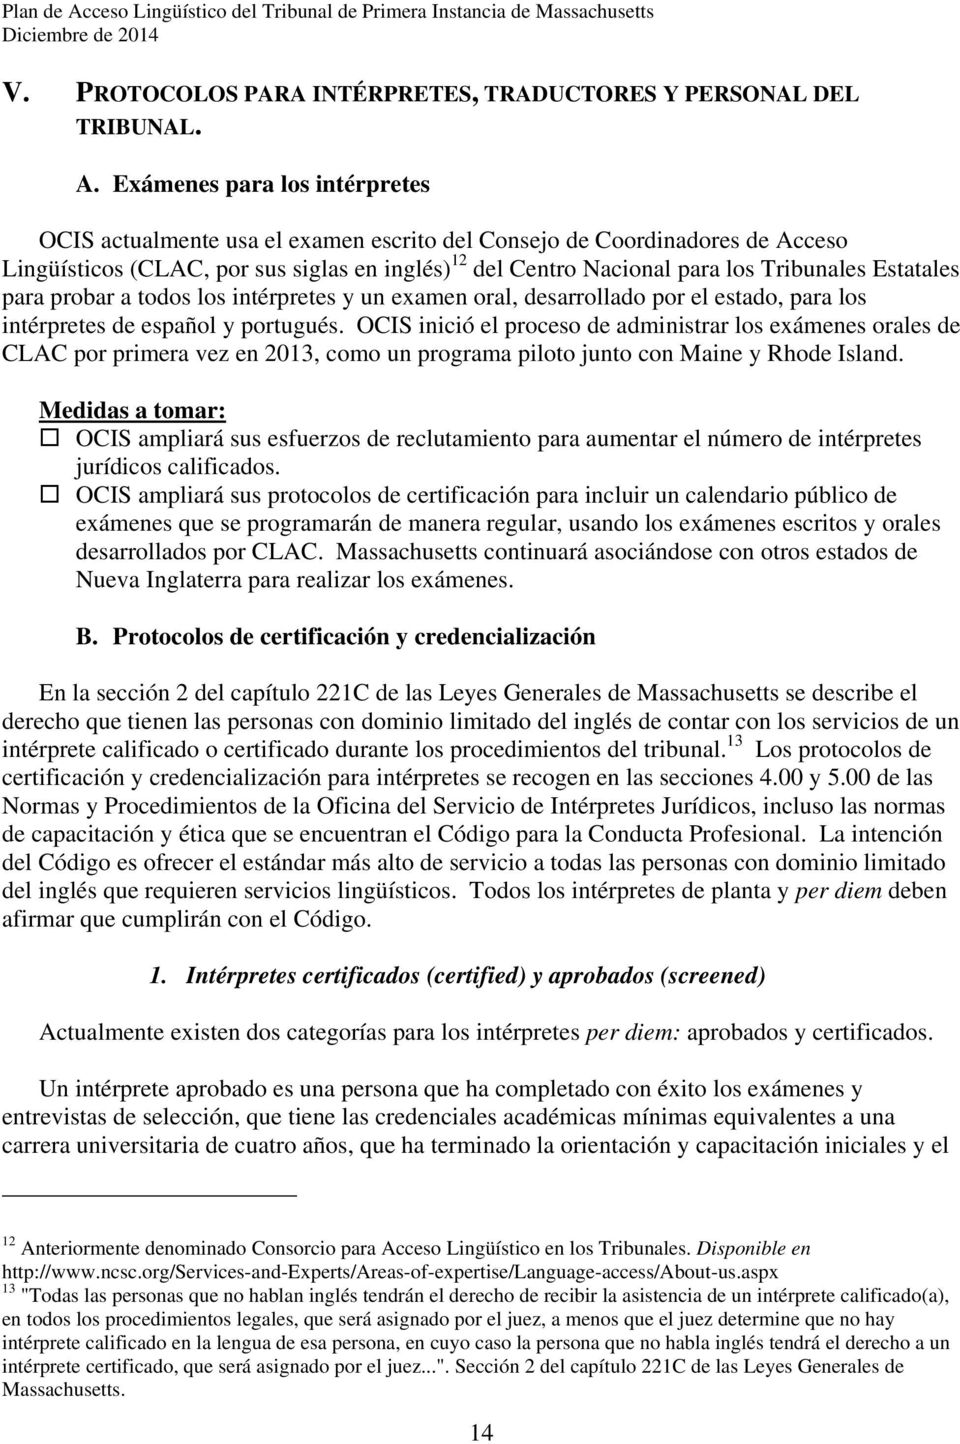 Estatales para probar a todos los intérpretes y un examen oral, desarrollado por el estado, para los intérpretes de español y portugués.